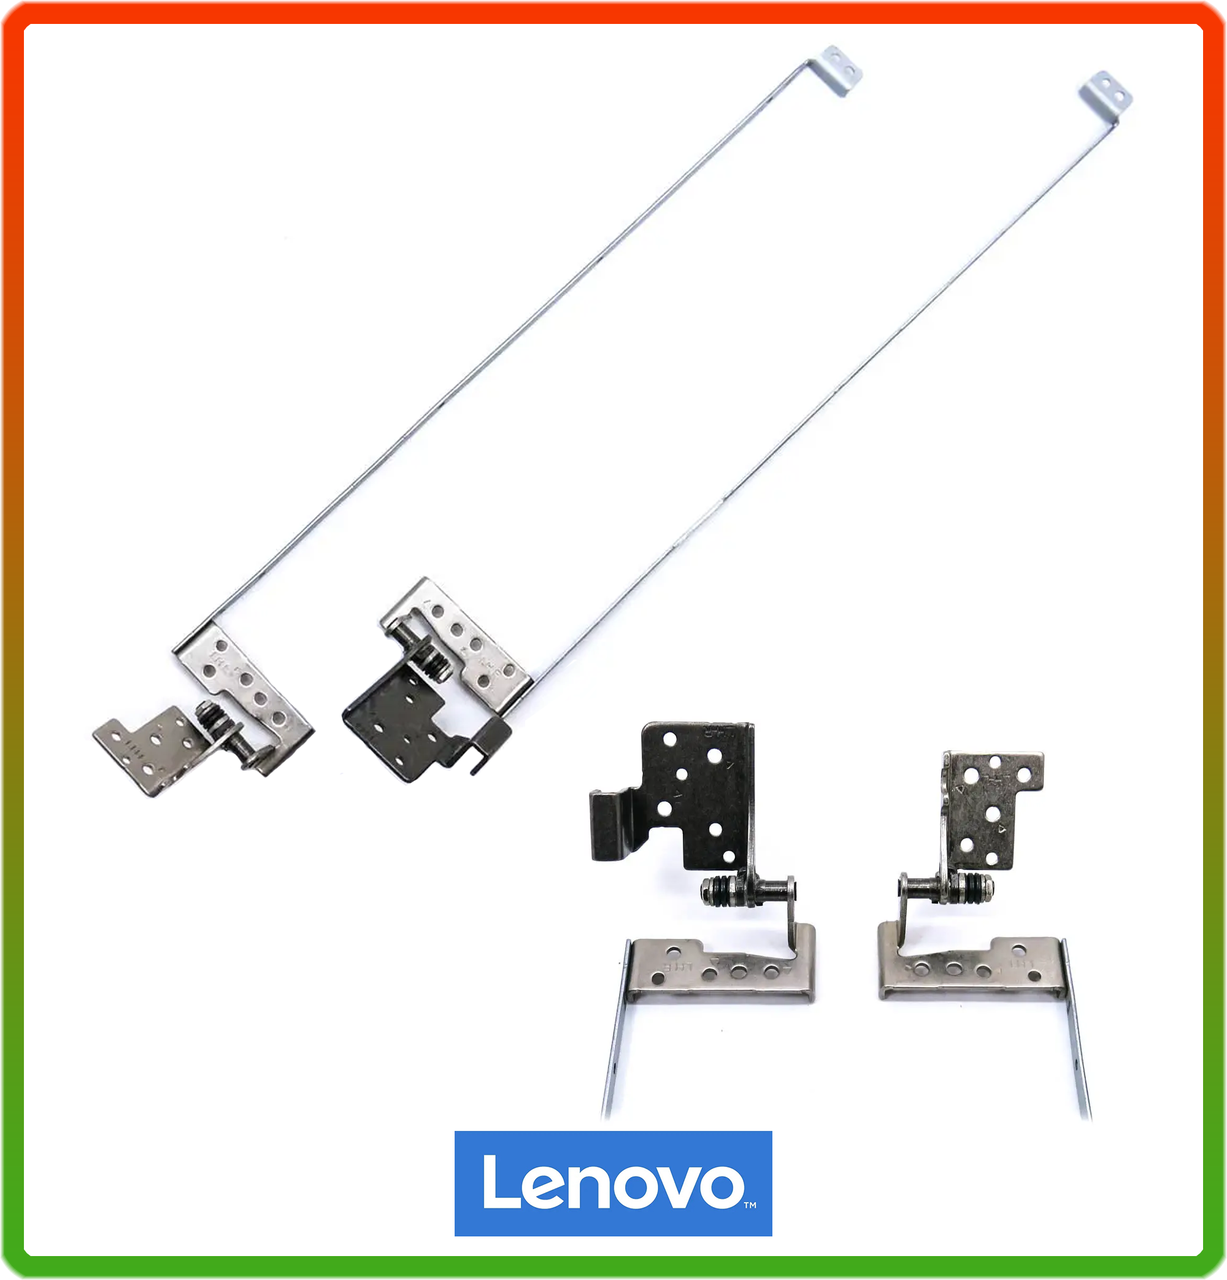 Петли для Lenovo G700 Series (13N0-B5M0203, 13N0-B5M0202). Пара, ліва + права 13N0-B5M0203 + 13N0-B5M0202